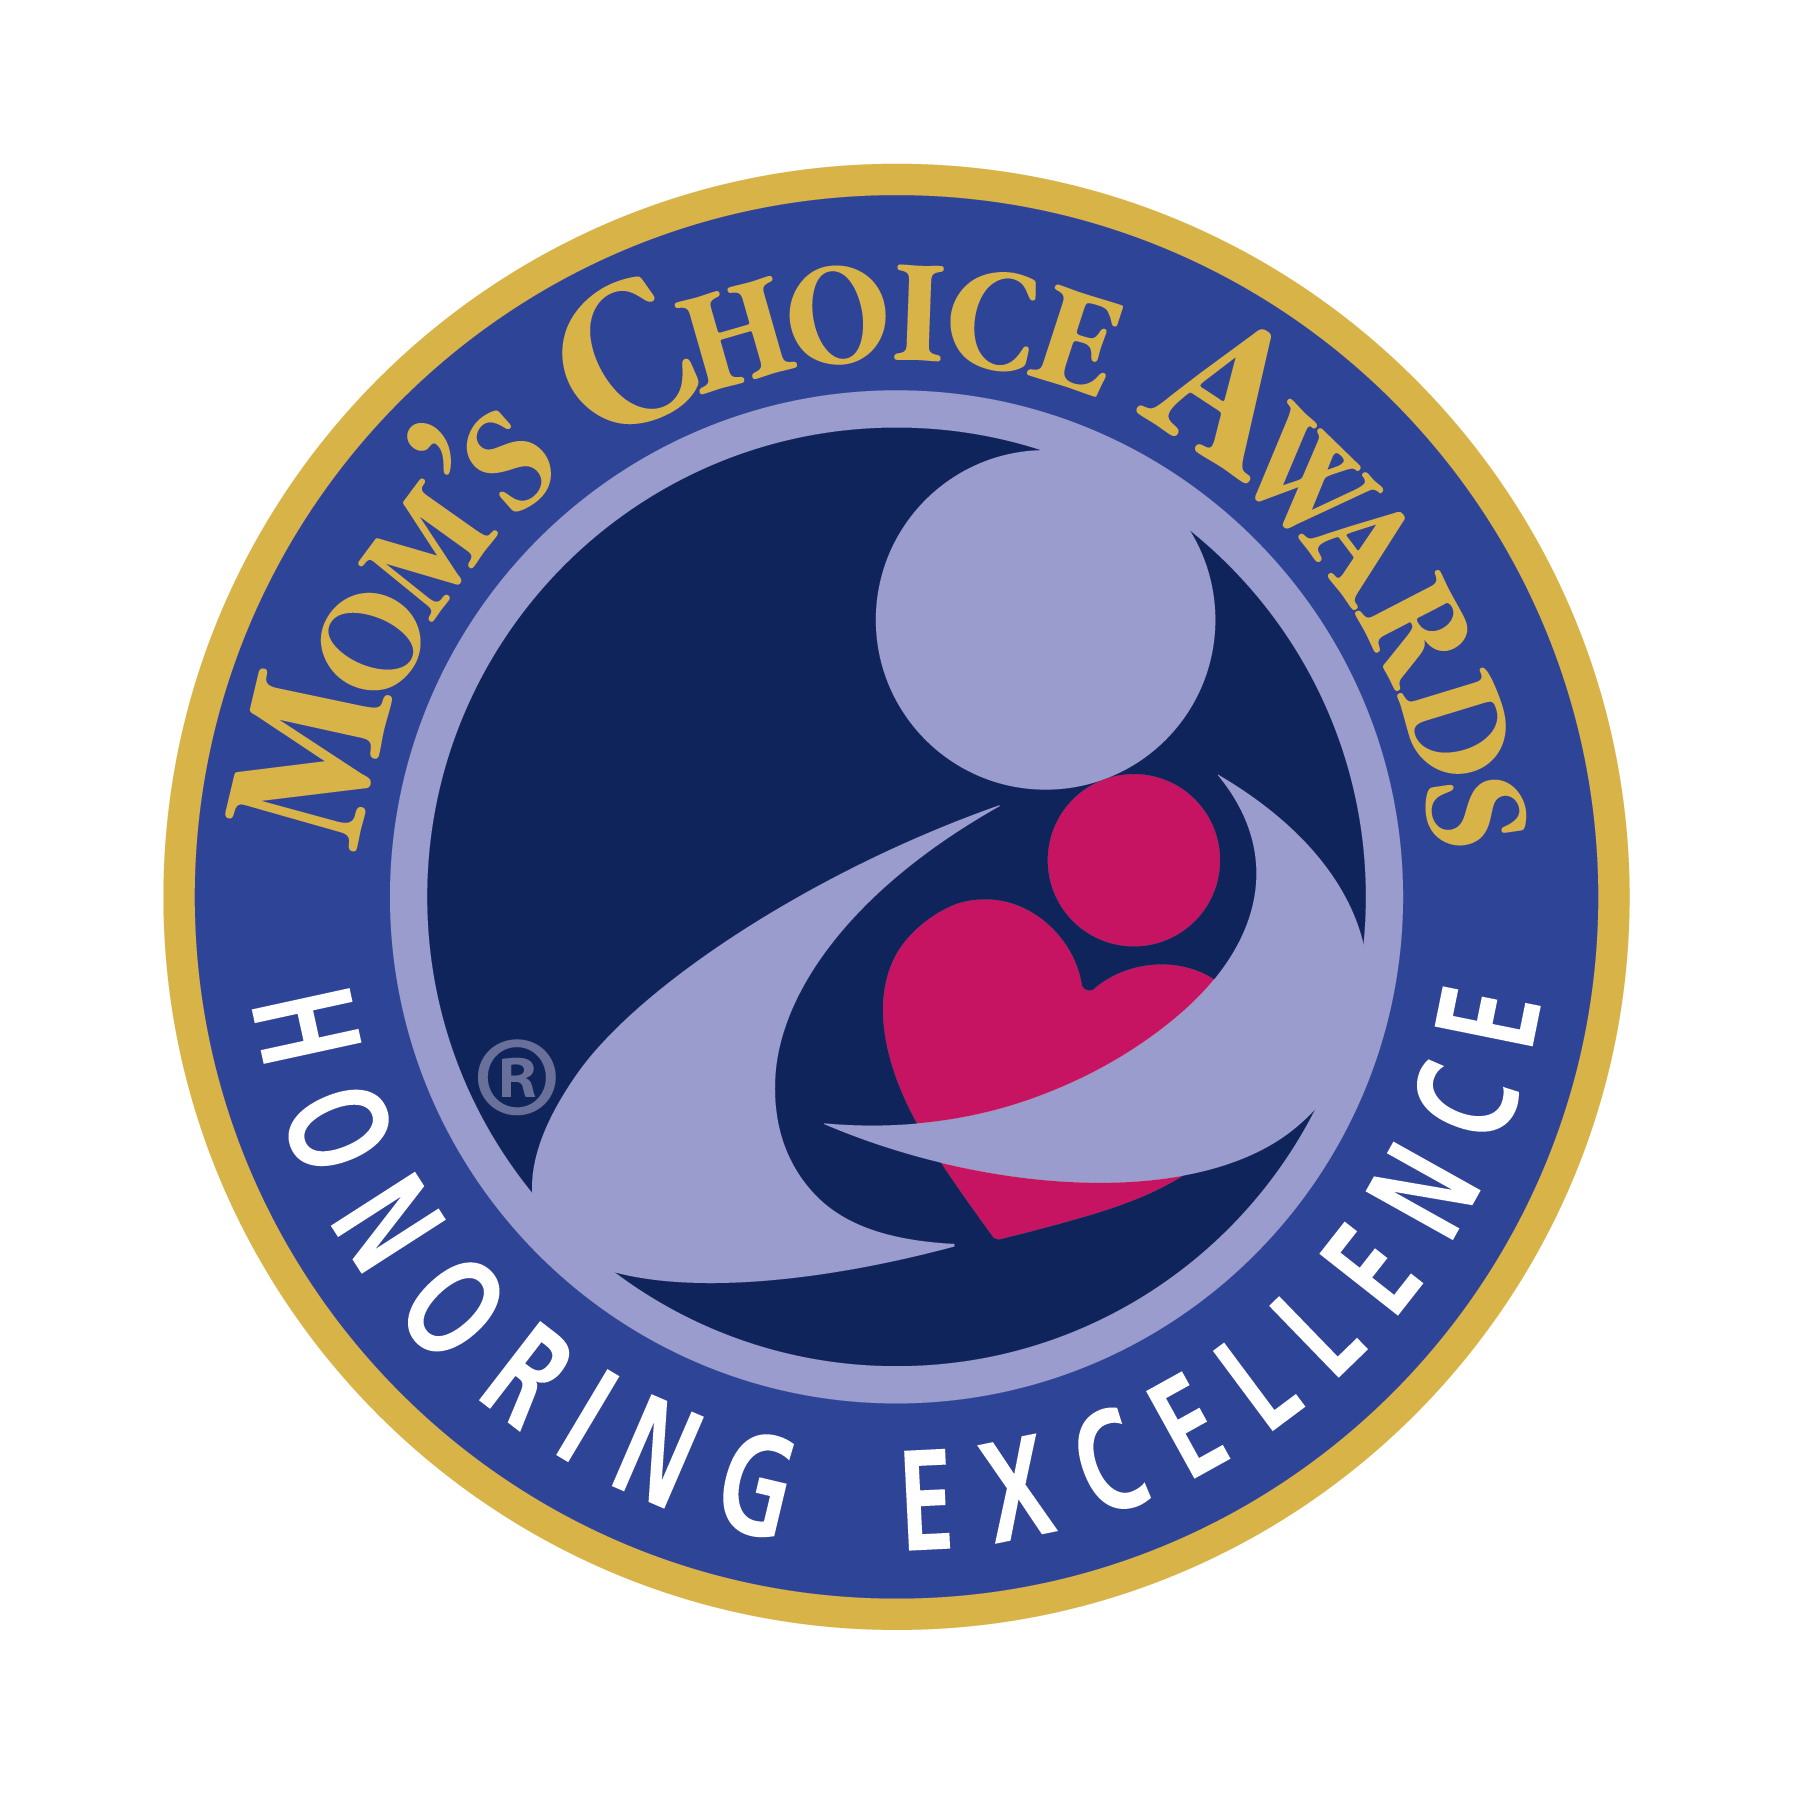 Mom's Choice Award logo.